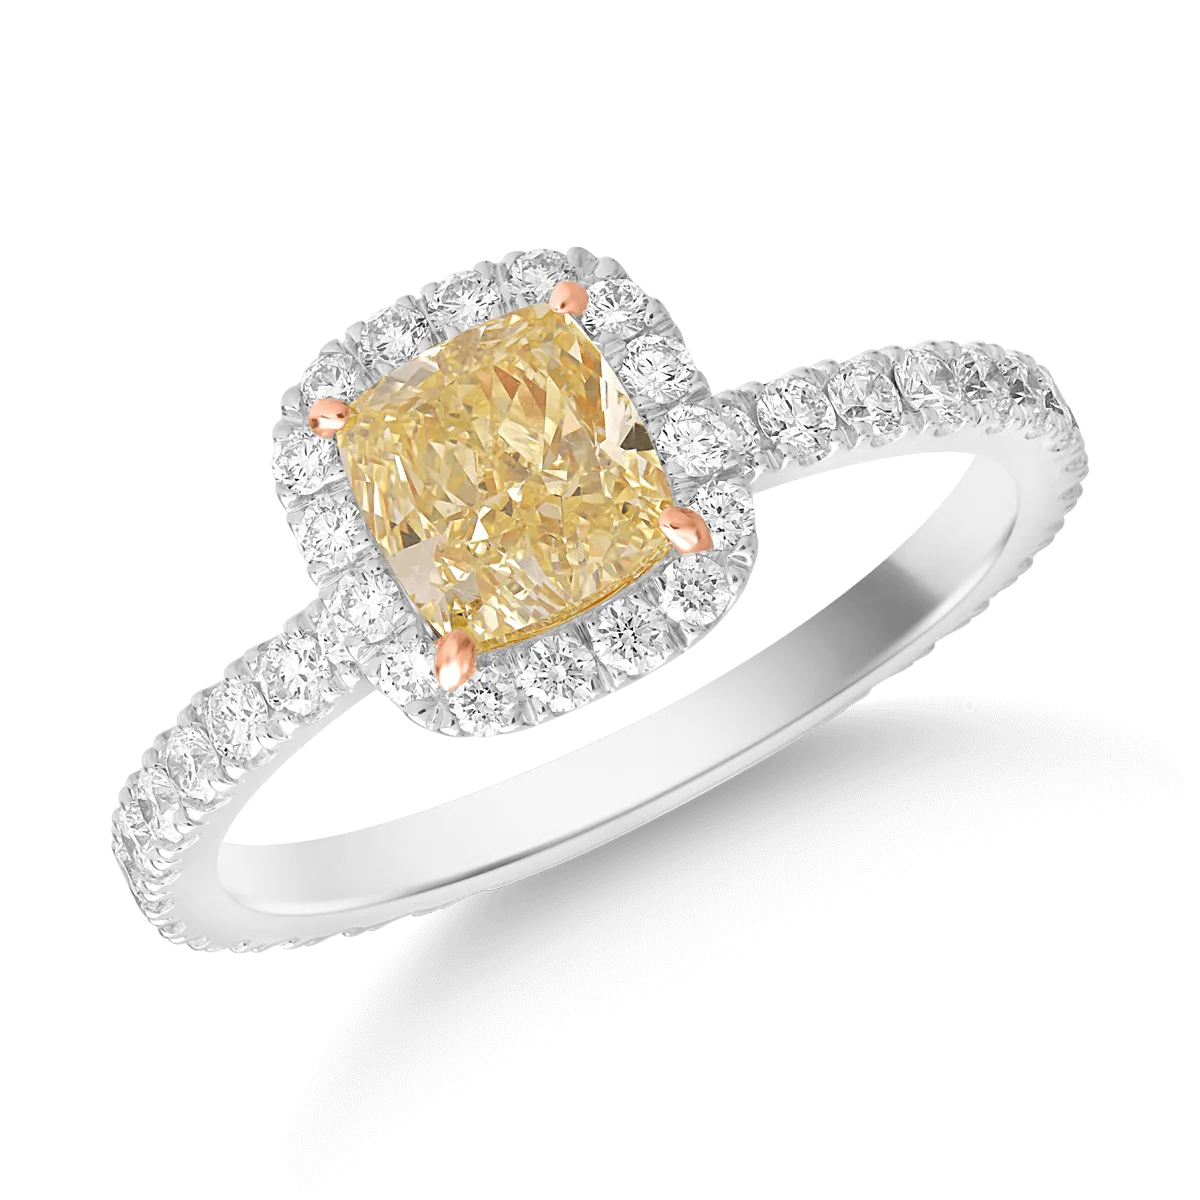 18k fehér aranygyűrű 1ct gyémánt díszítéssel és gyémántokkal 0,64ct